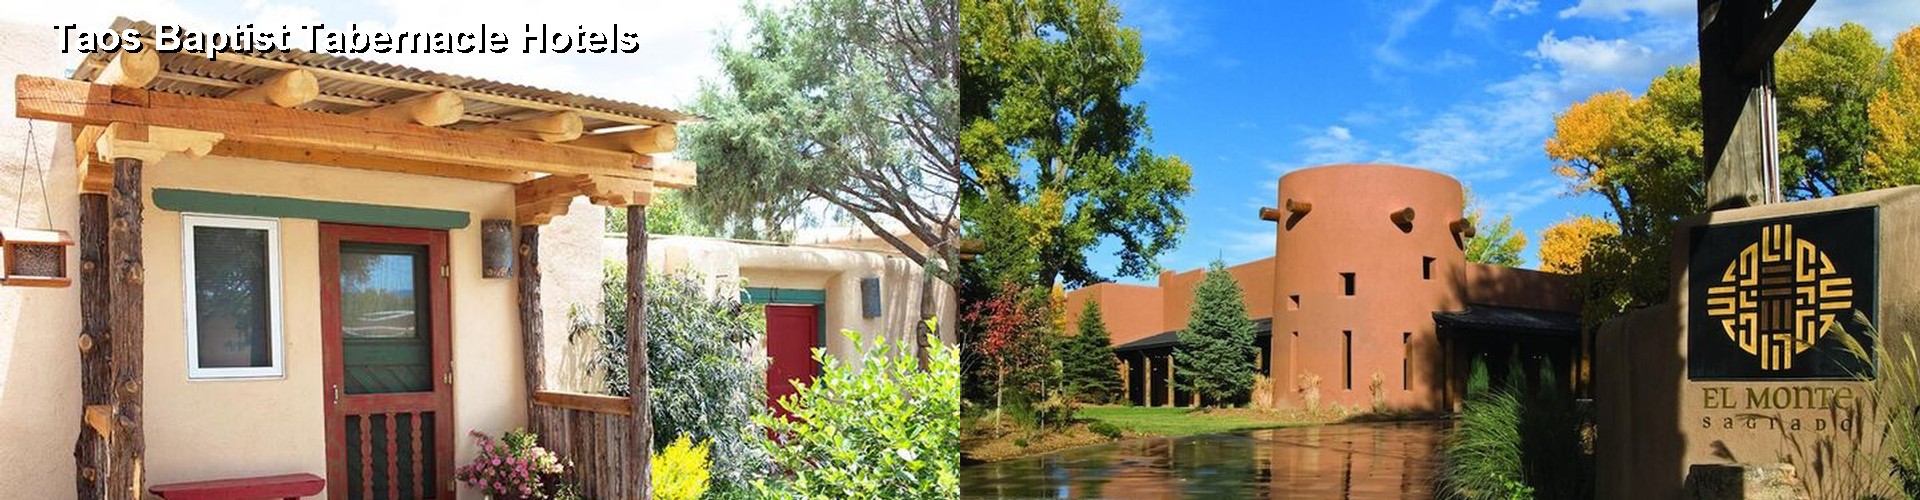 3 Best Hotels near Taos Baptist Tabernacle